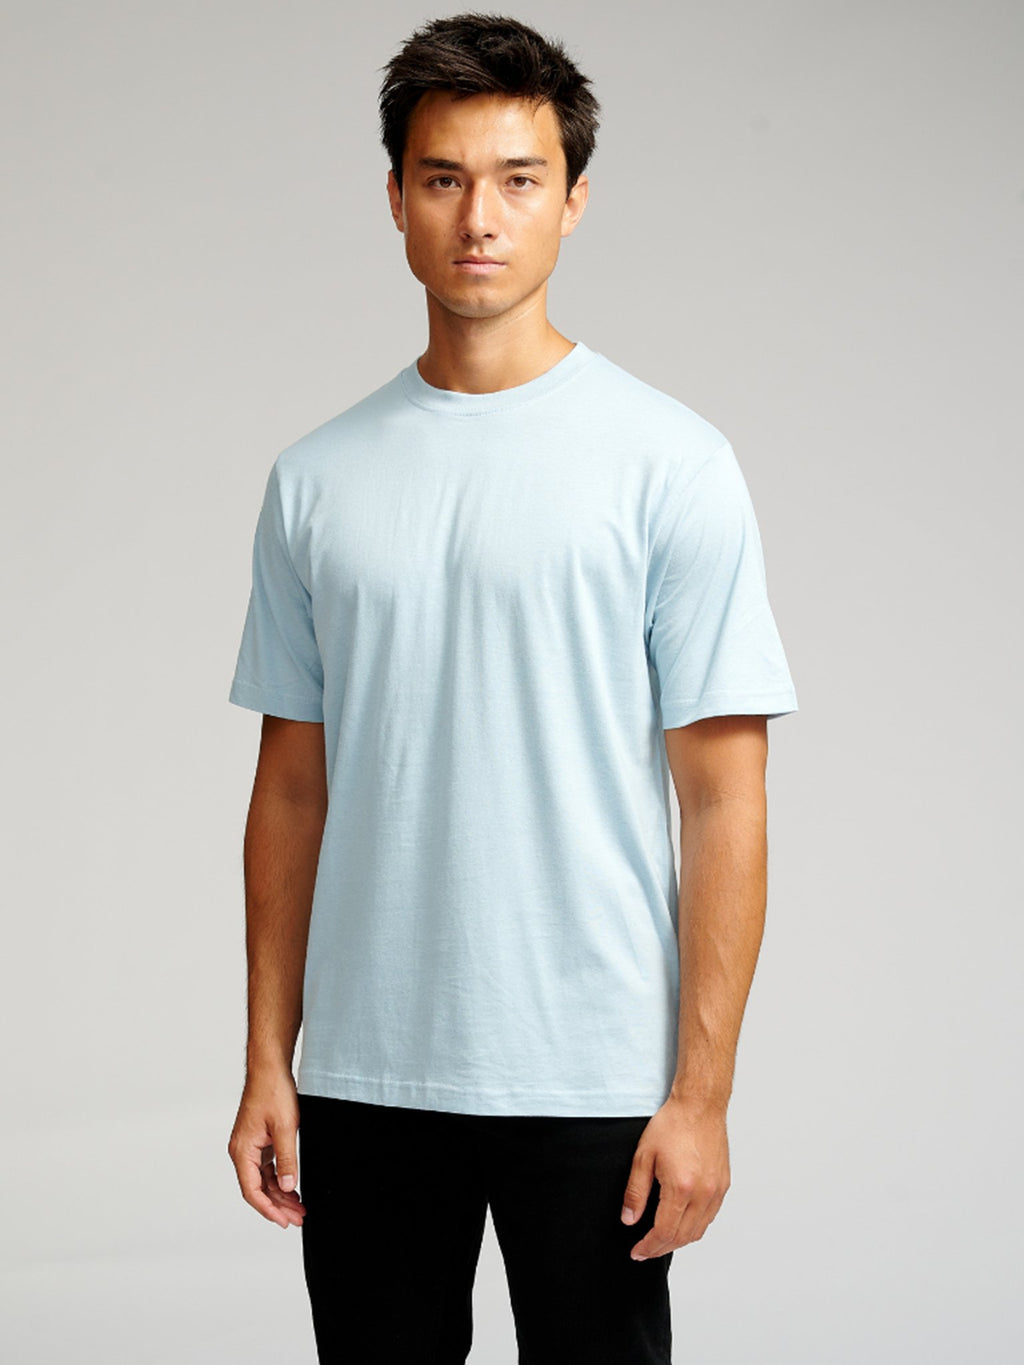 T-shirt surdimensionné - Bleu ciel